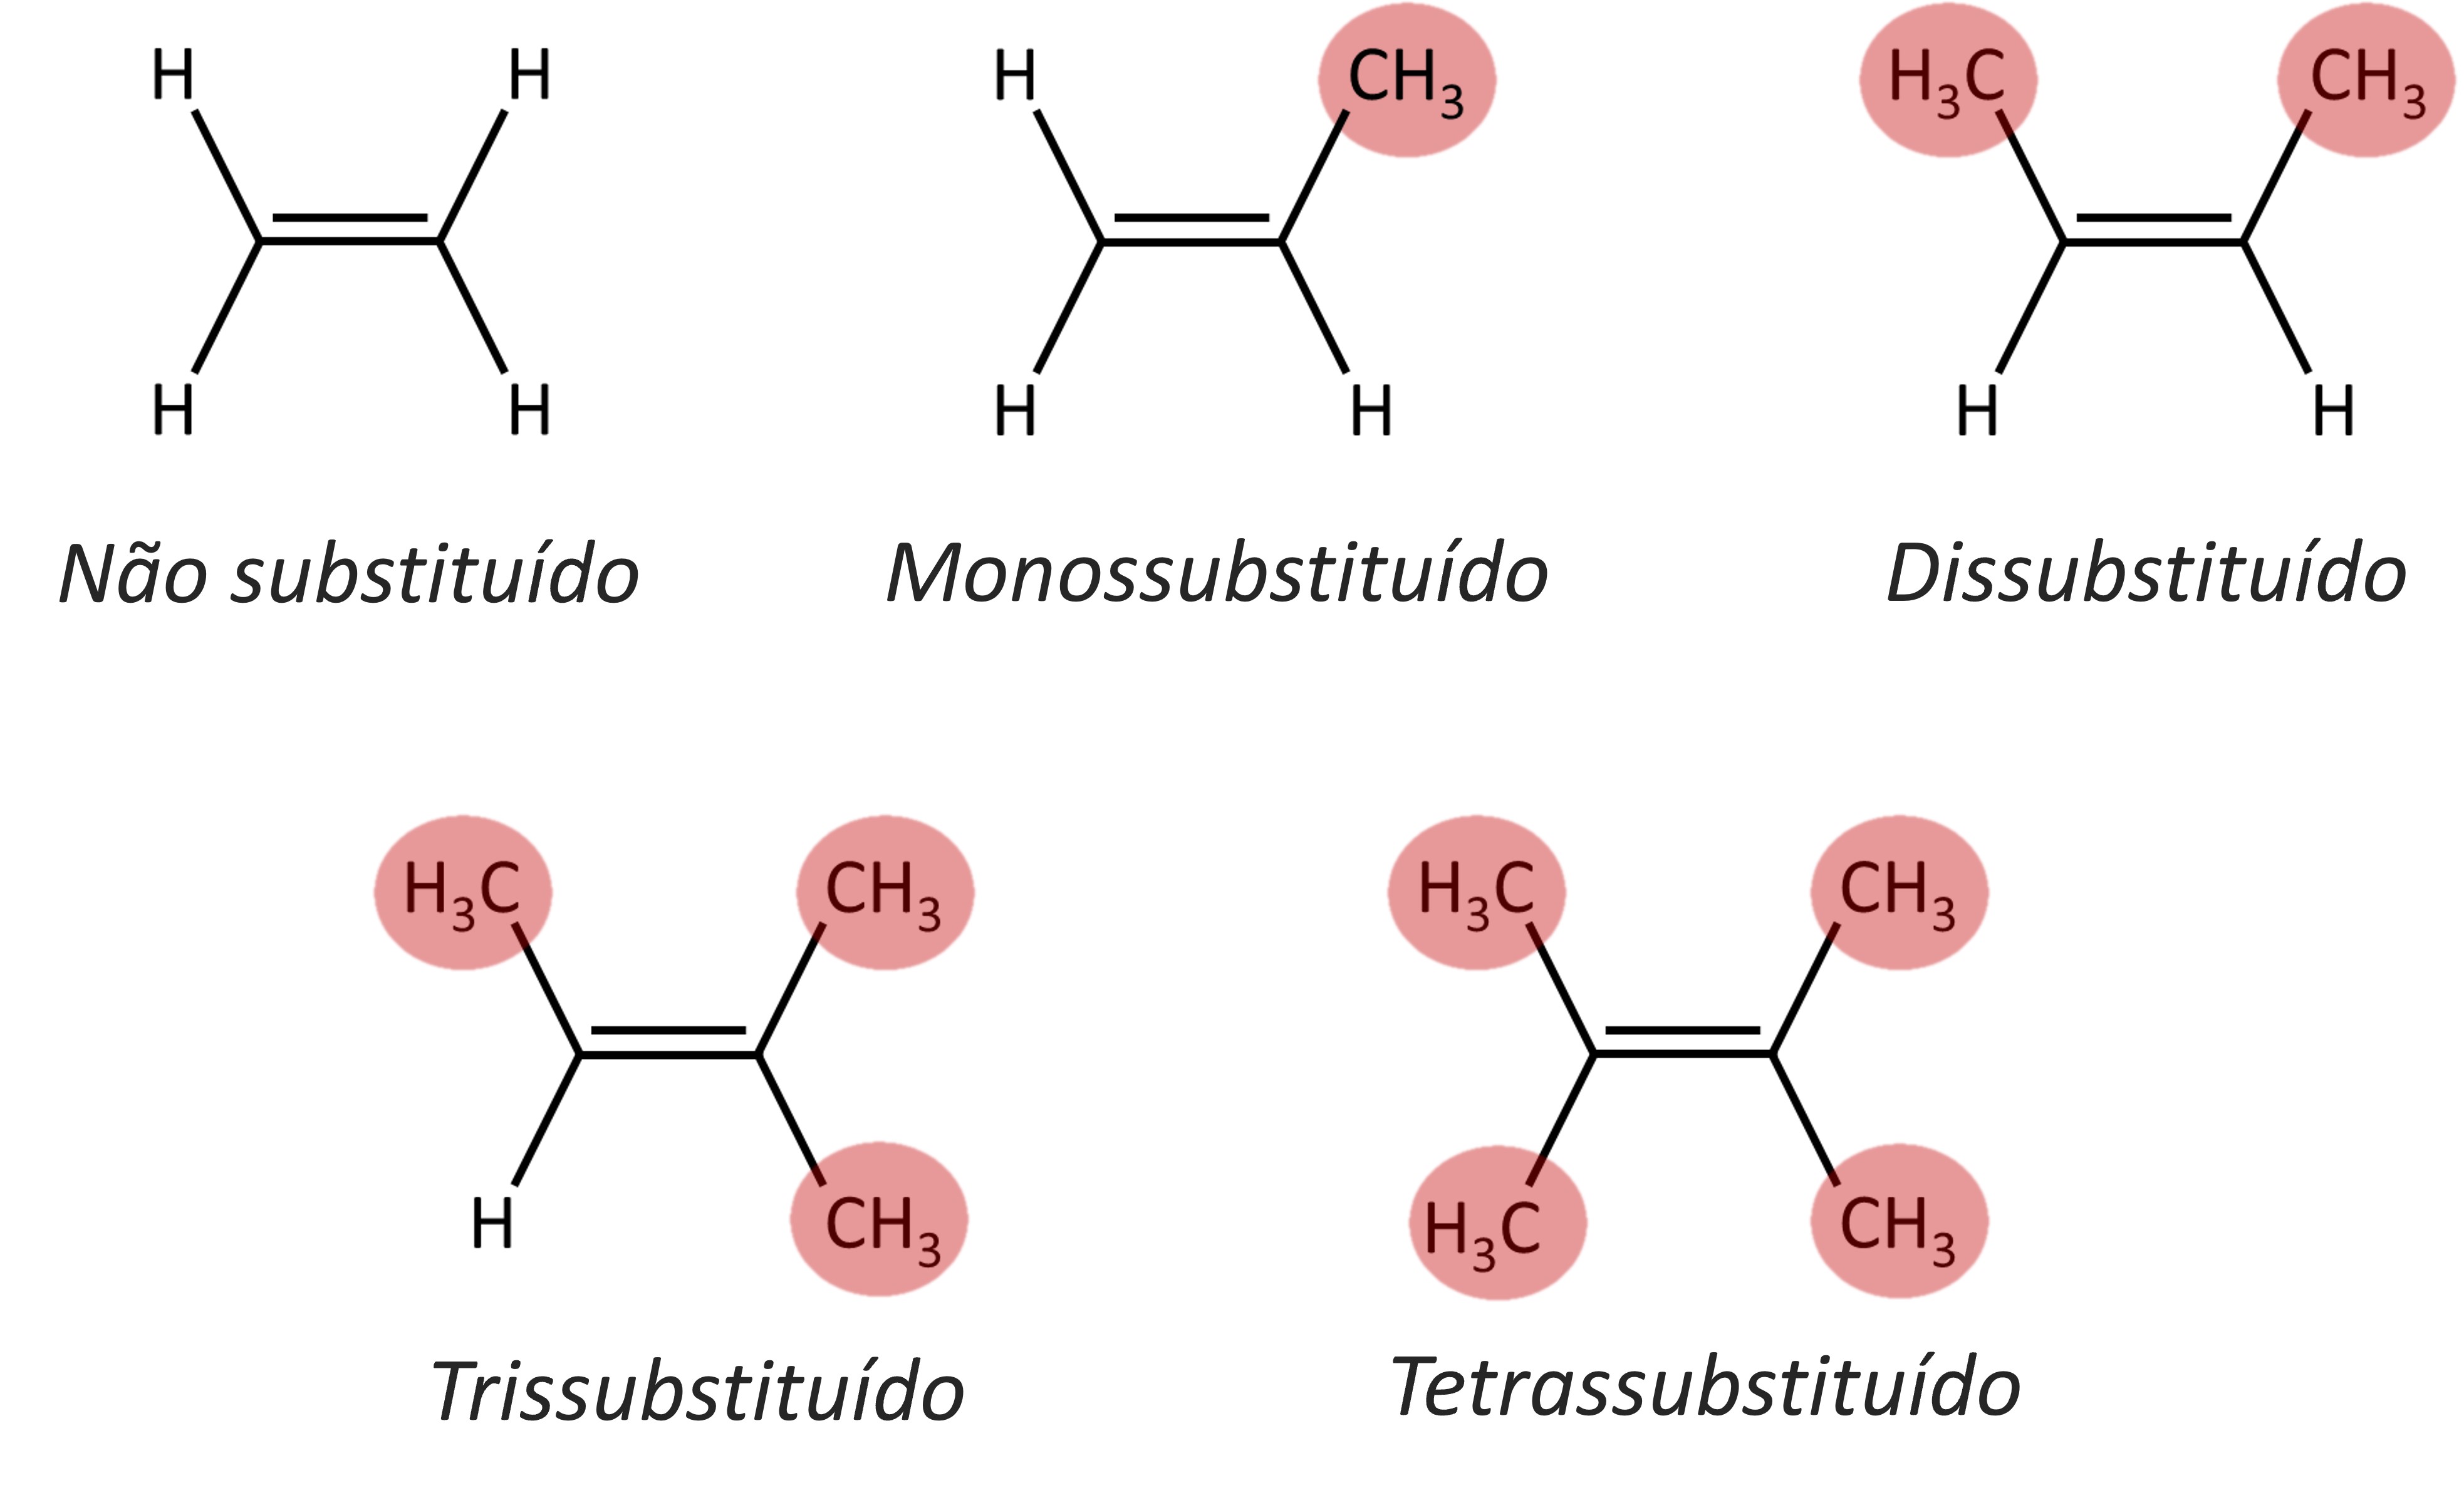 Exemplos de moléculas e o seu grau de substituição de carbonos.